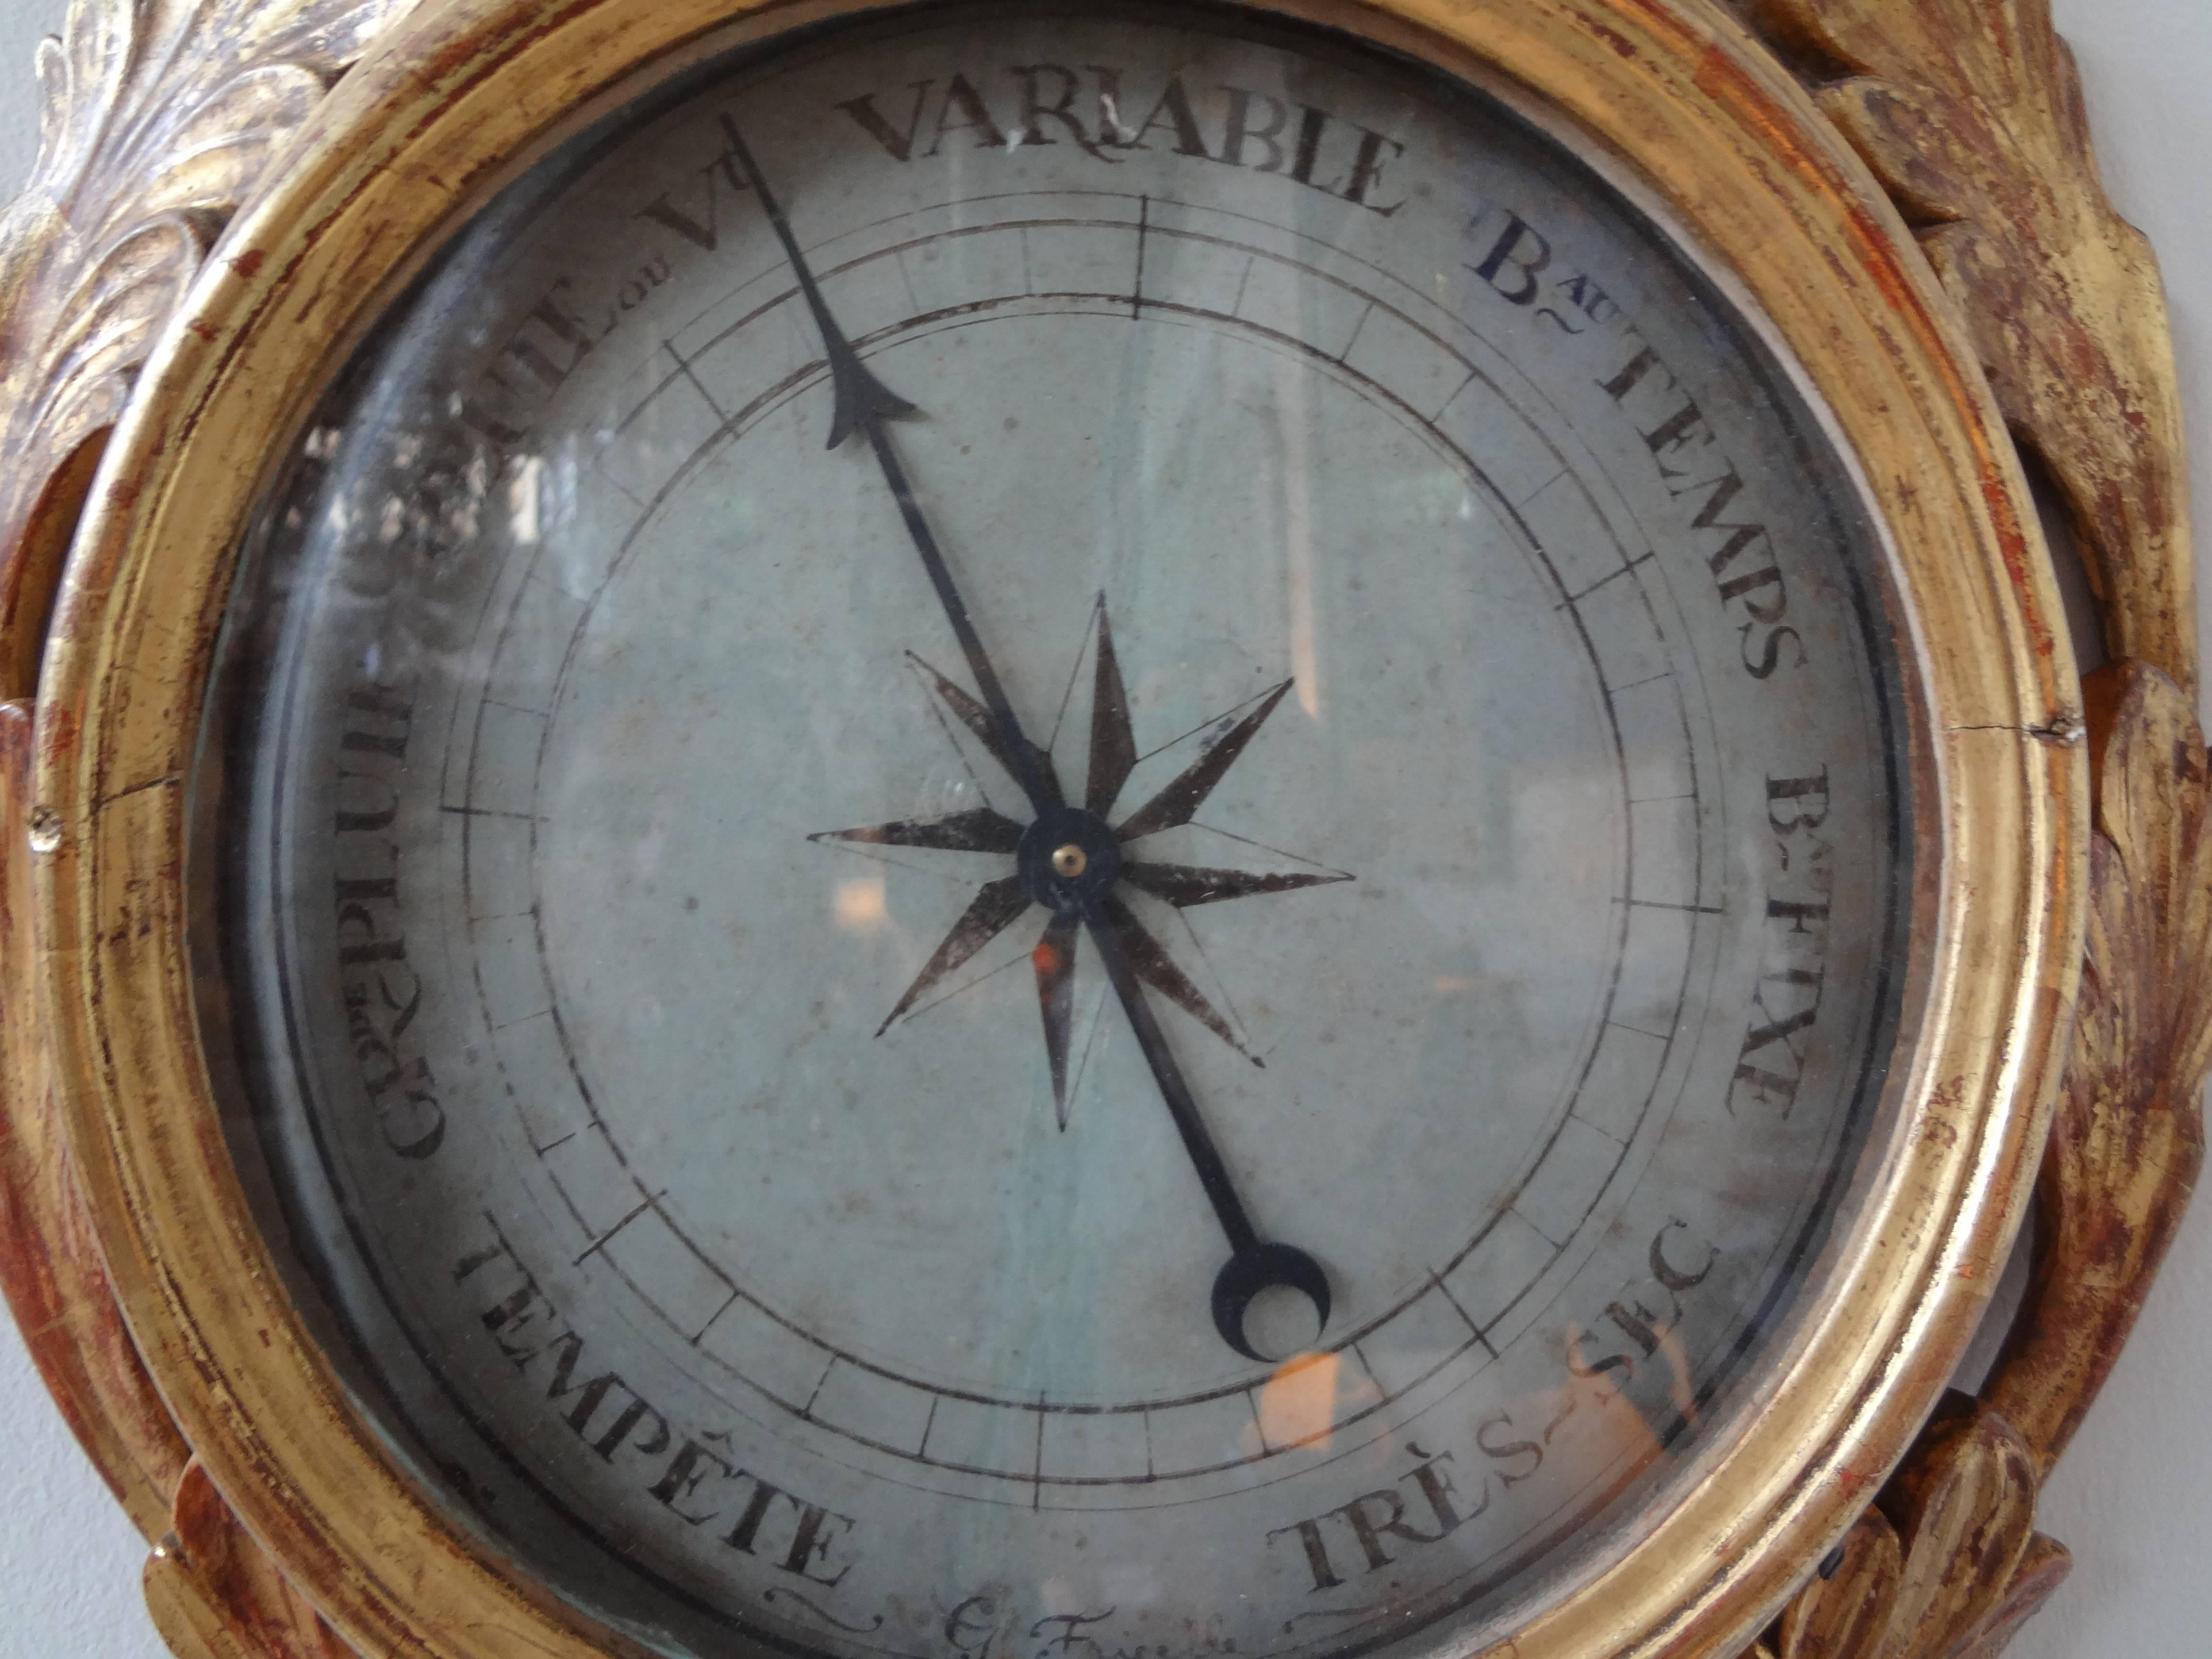 Schöne Französisch Louis XVI Vergoldung Barometer mit schöner Patina. Dieses antike französische Barometer aus vergoldetem Holz im Louis XVI-Stil verleiht jedem Haus einen Hauch von Eleganz.

